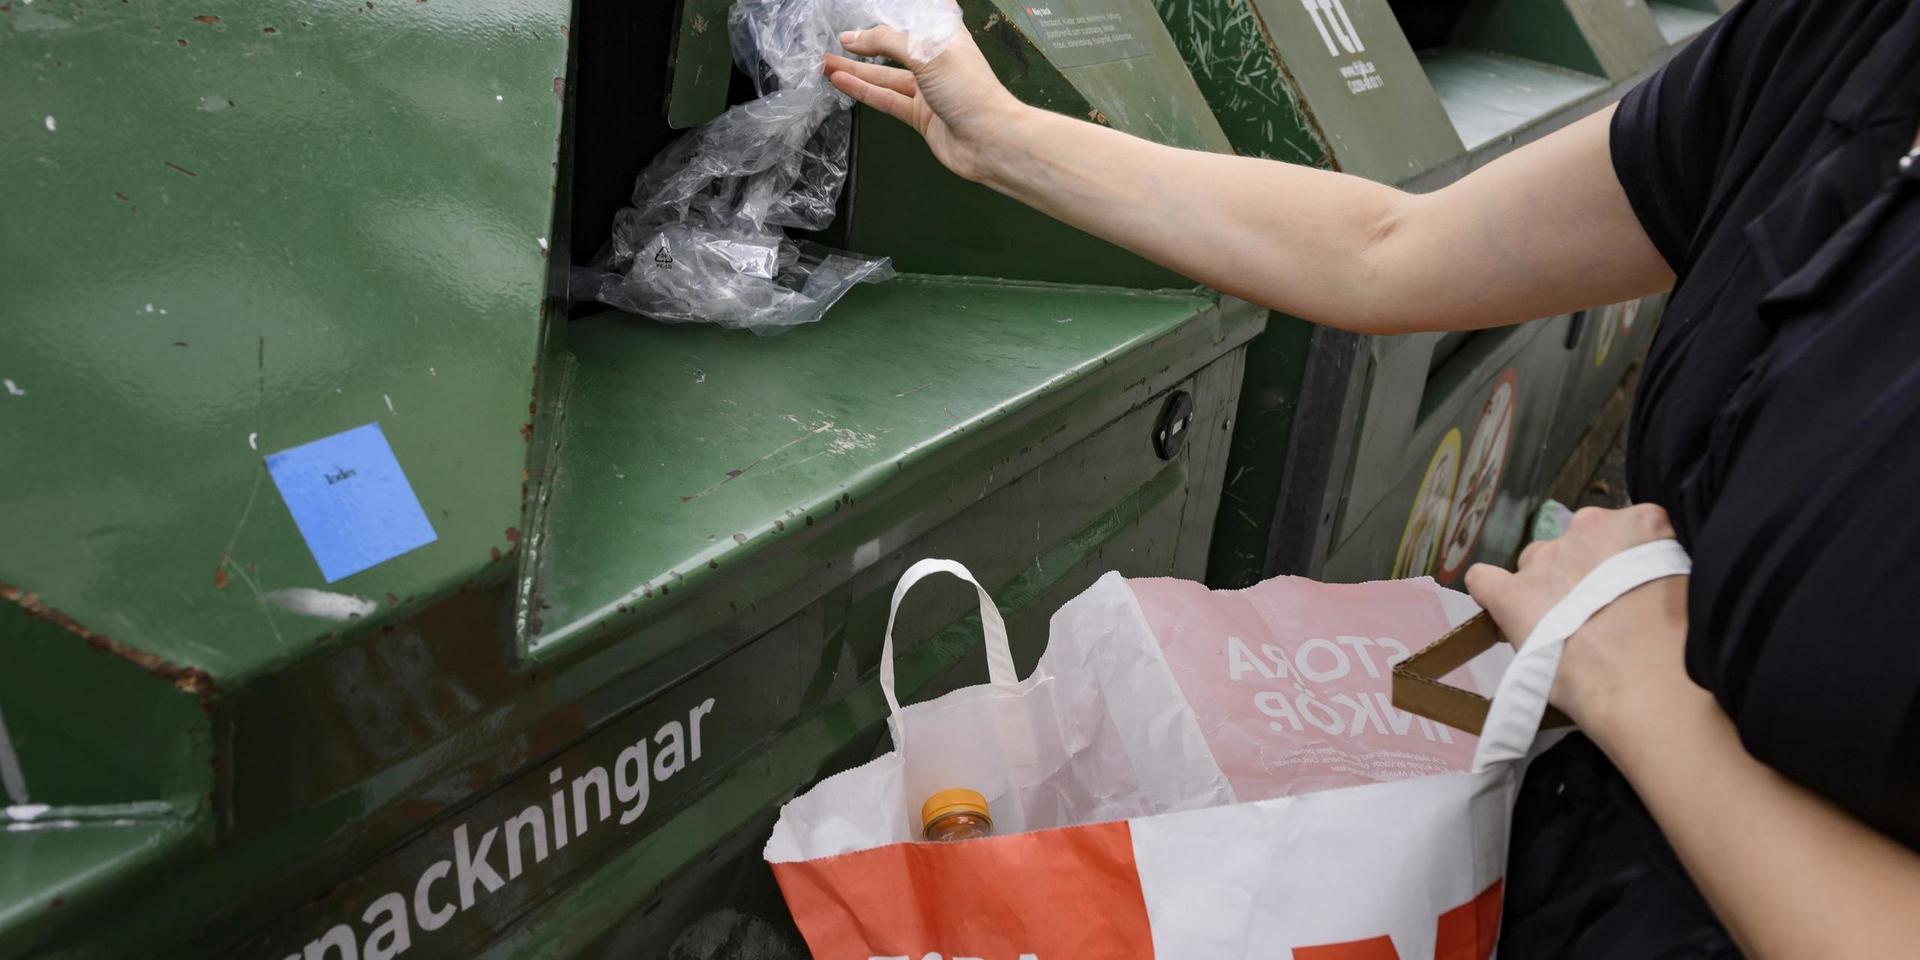 Förpacknings- och Tidningsinsamlingen (FTI) ser ett ökat problem med avfall som felaktigt dumpas på återvinningsstationer runtom i landet. Arkivbild.